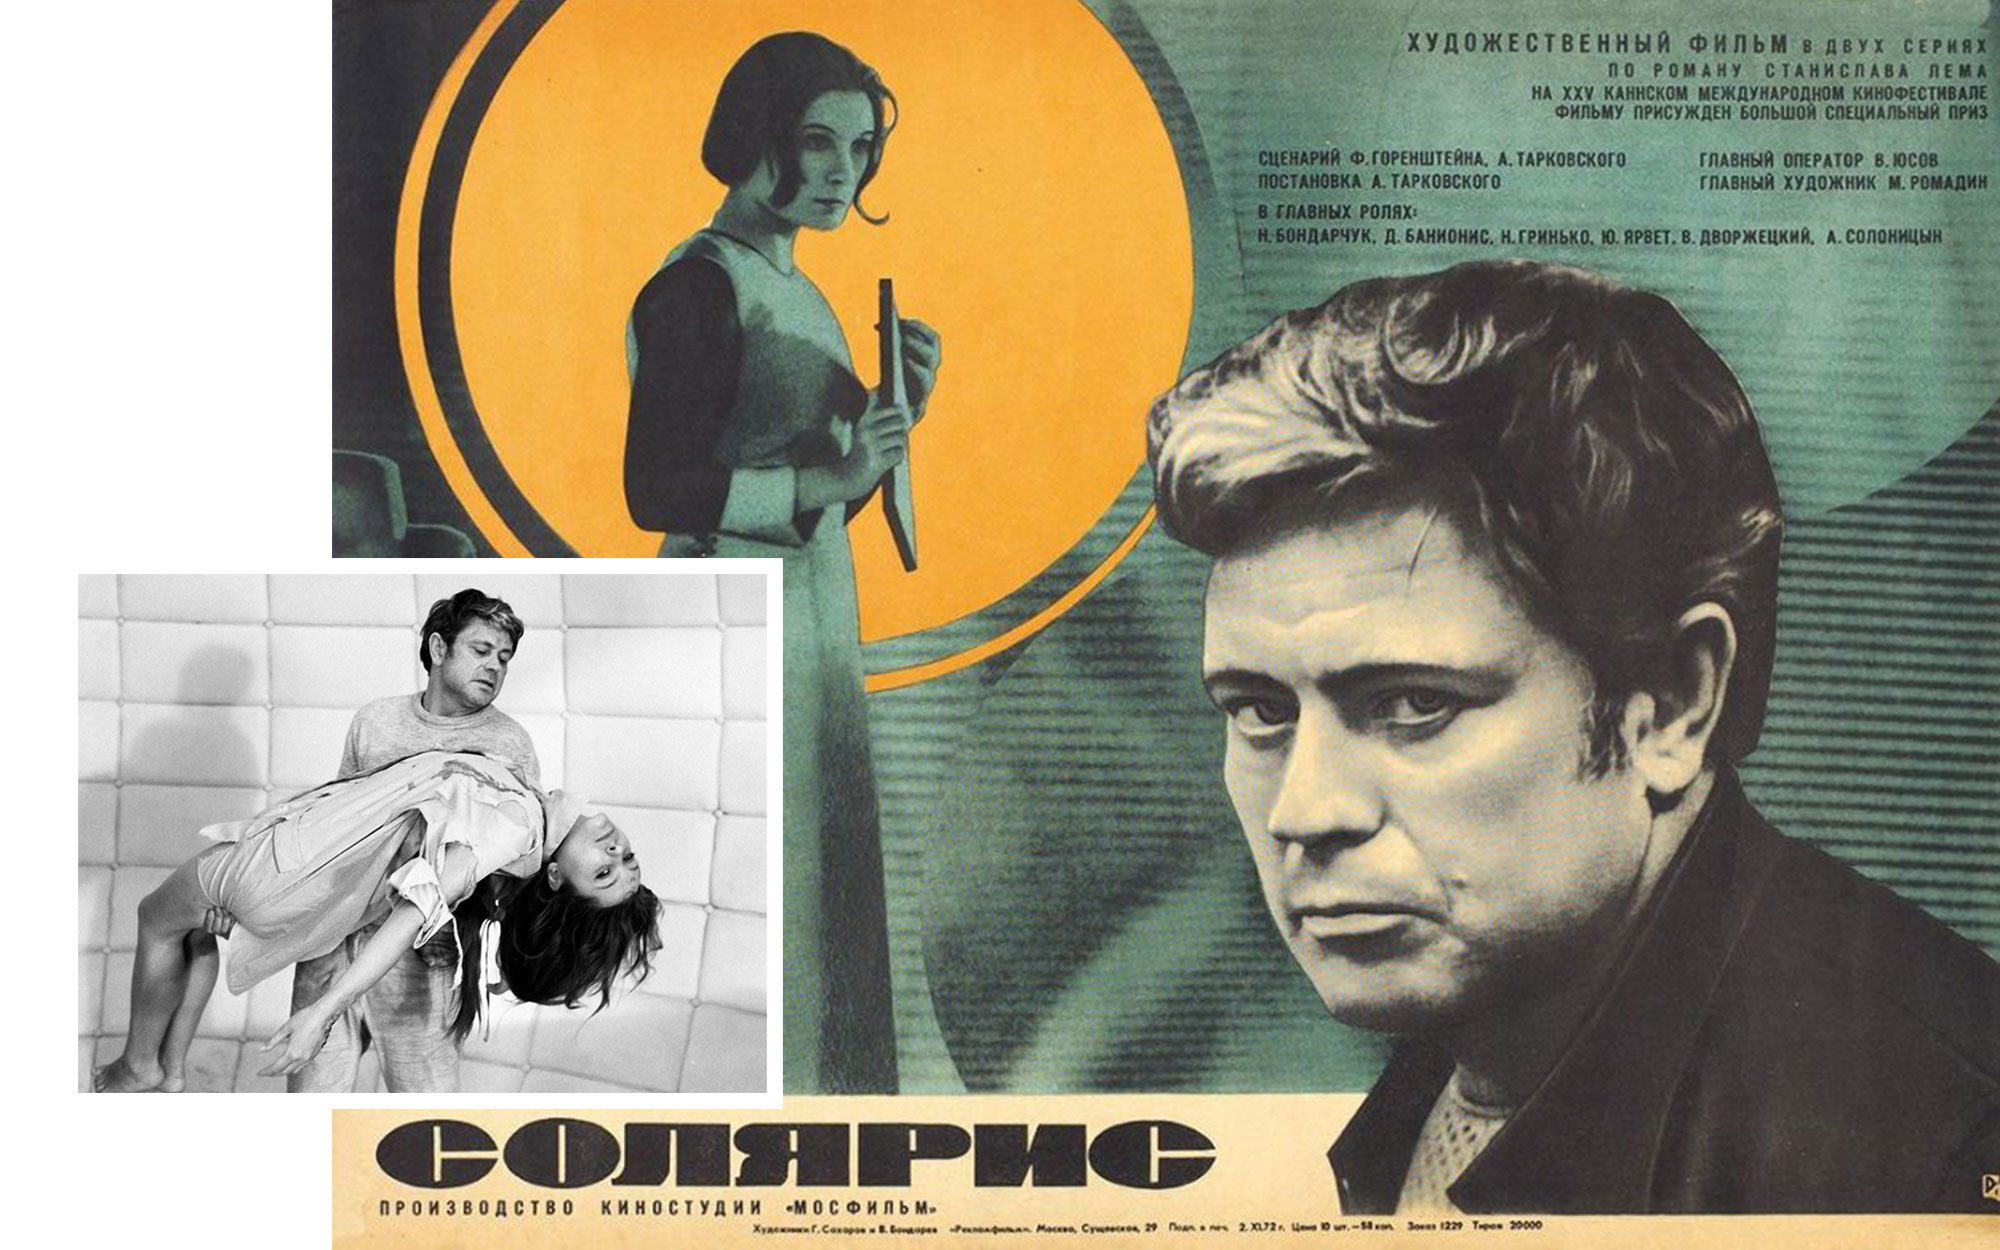 Обложка и кадр из фильма "Солярис" режиссера Андрея Тарковского, 1972 г. Фото: © kinopoisk.ru